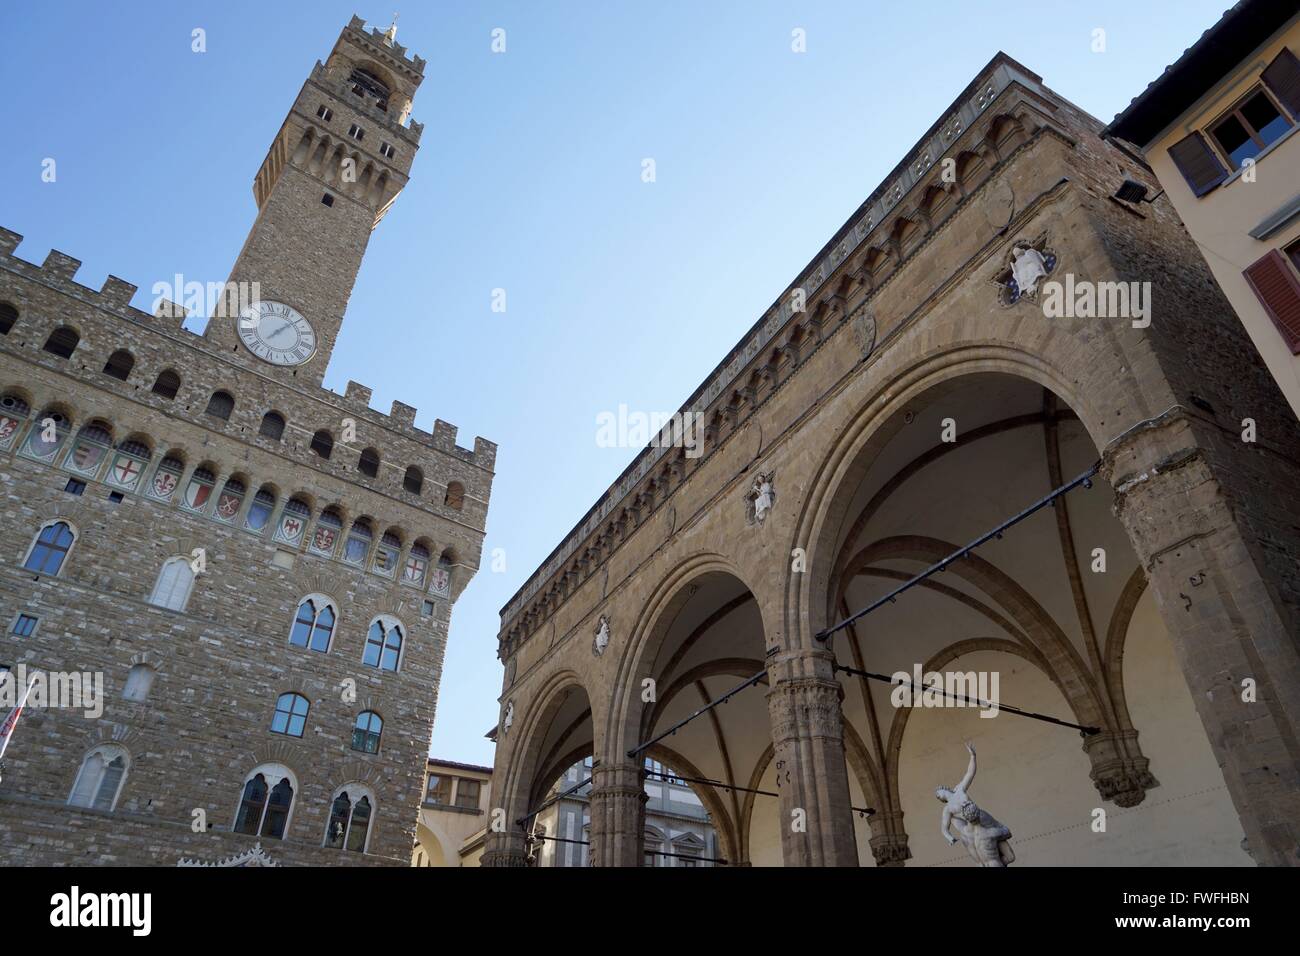 Italy: Palazzo Vecchio (town hall, left) and Loggia dei Lanzi (right) at Piazza della Signoria in Florence. Photo from 20. February 2016. Stock Photo